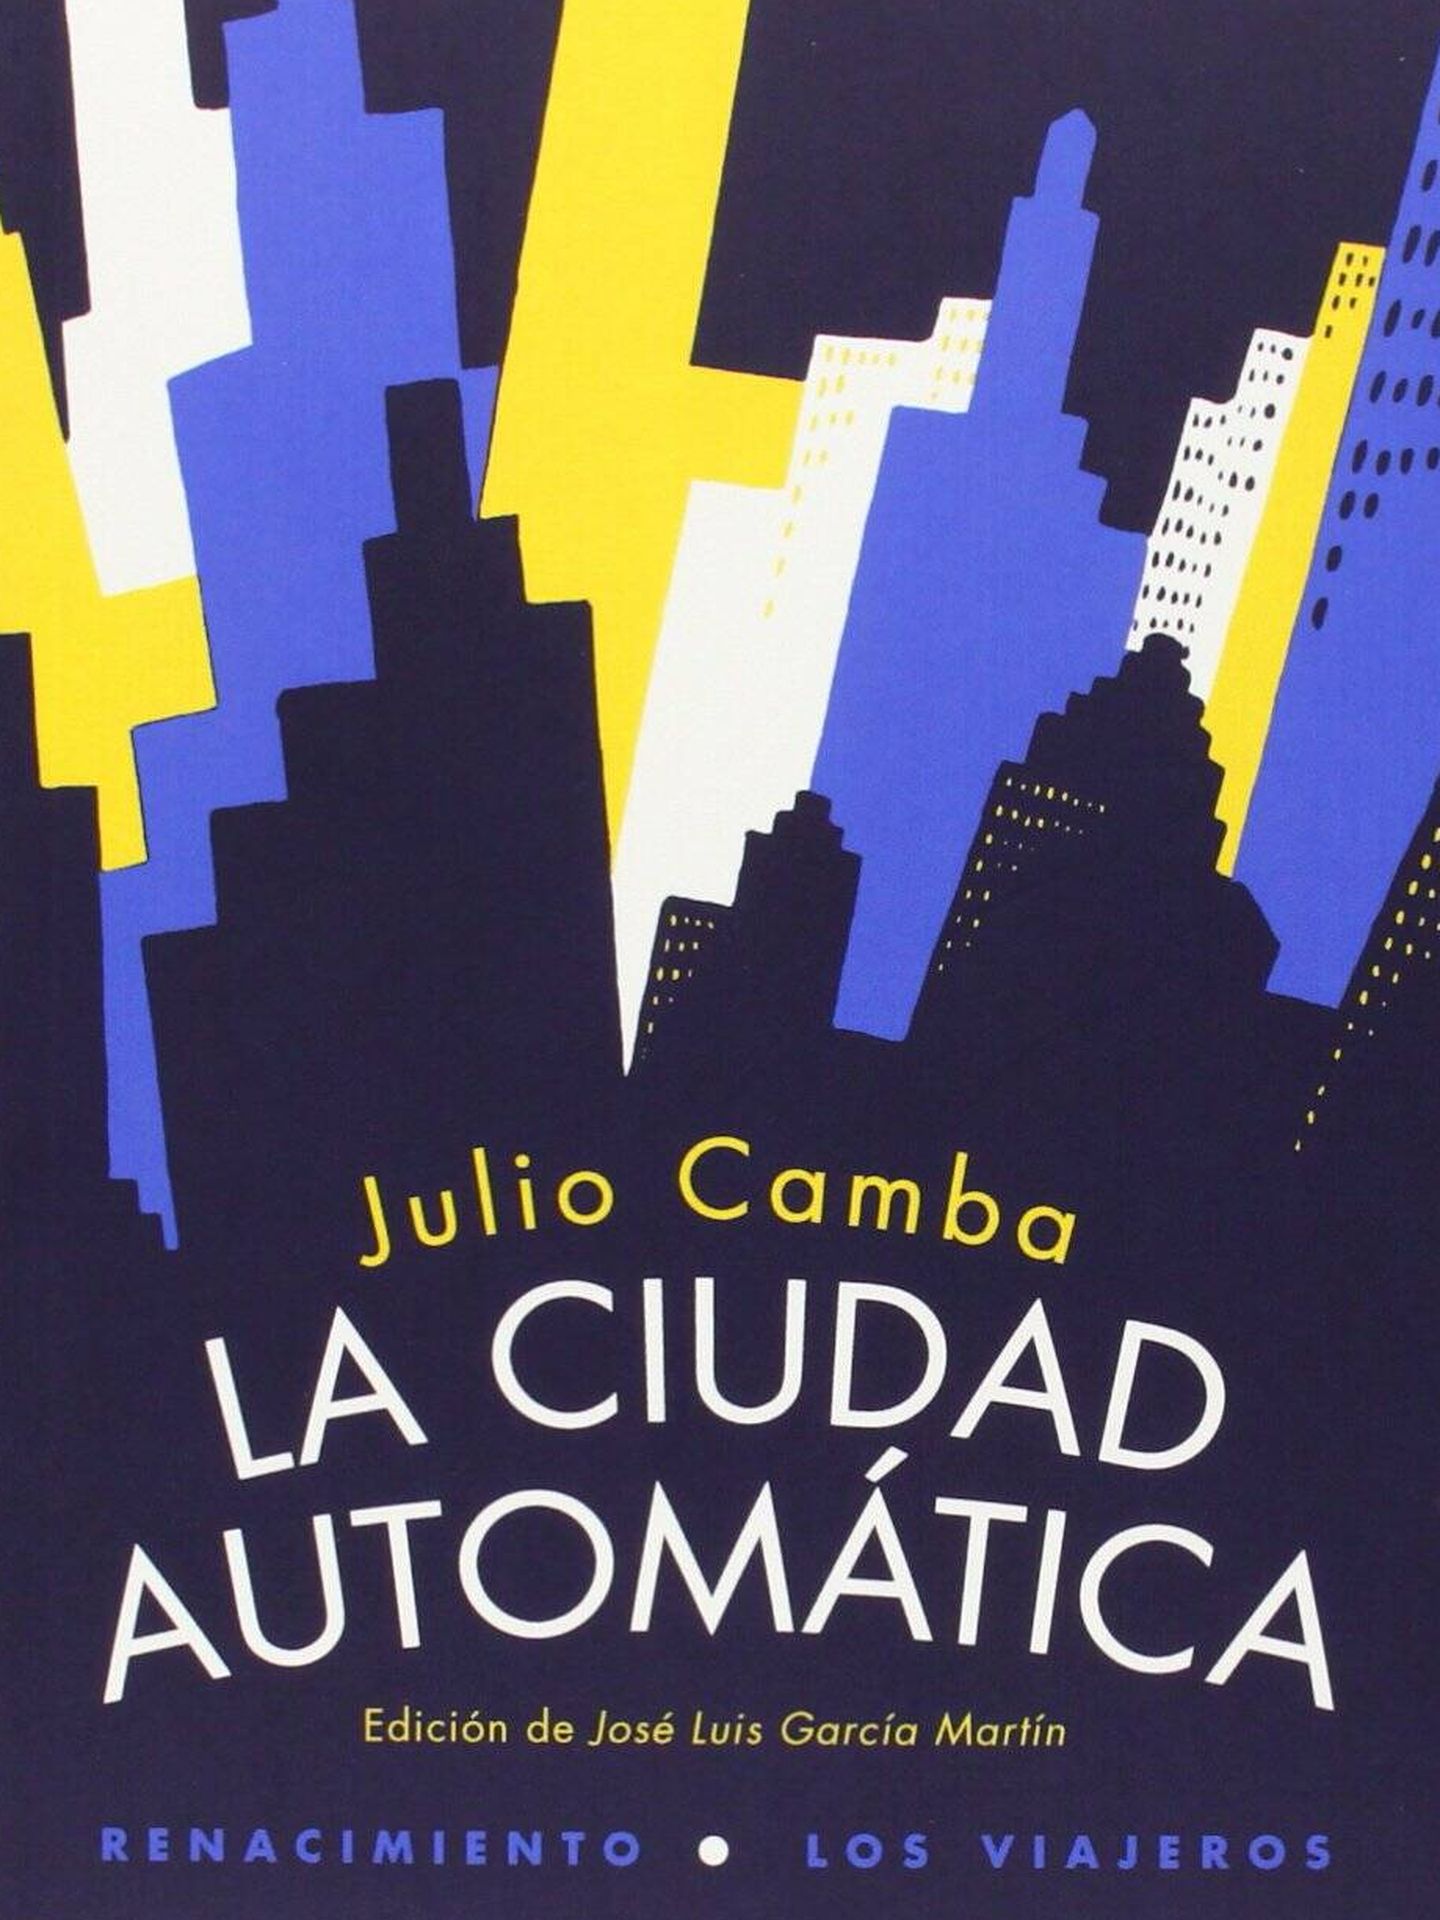 La ciudad automática, de Julio Camba (Editorial Renacimiento)